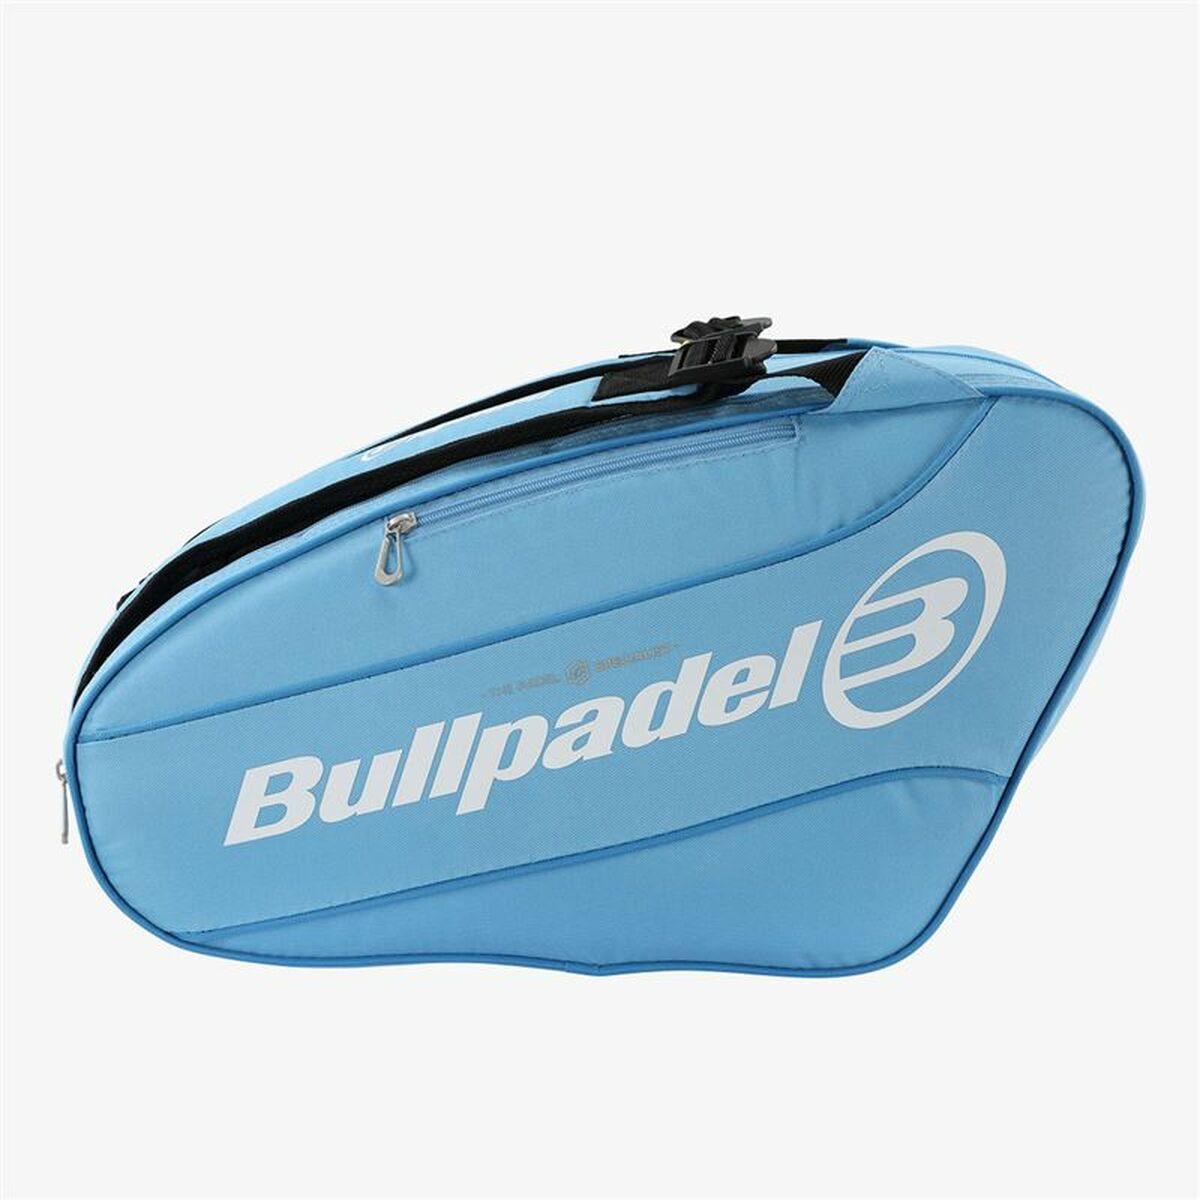 Tasche für Paddles Bullpadel BPP-23015  Bunt